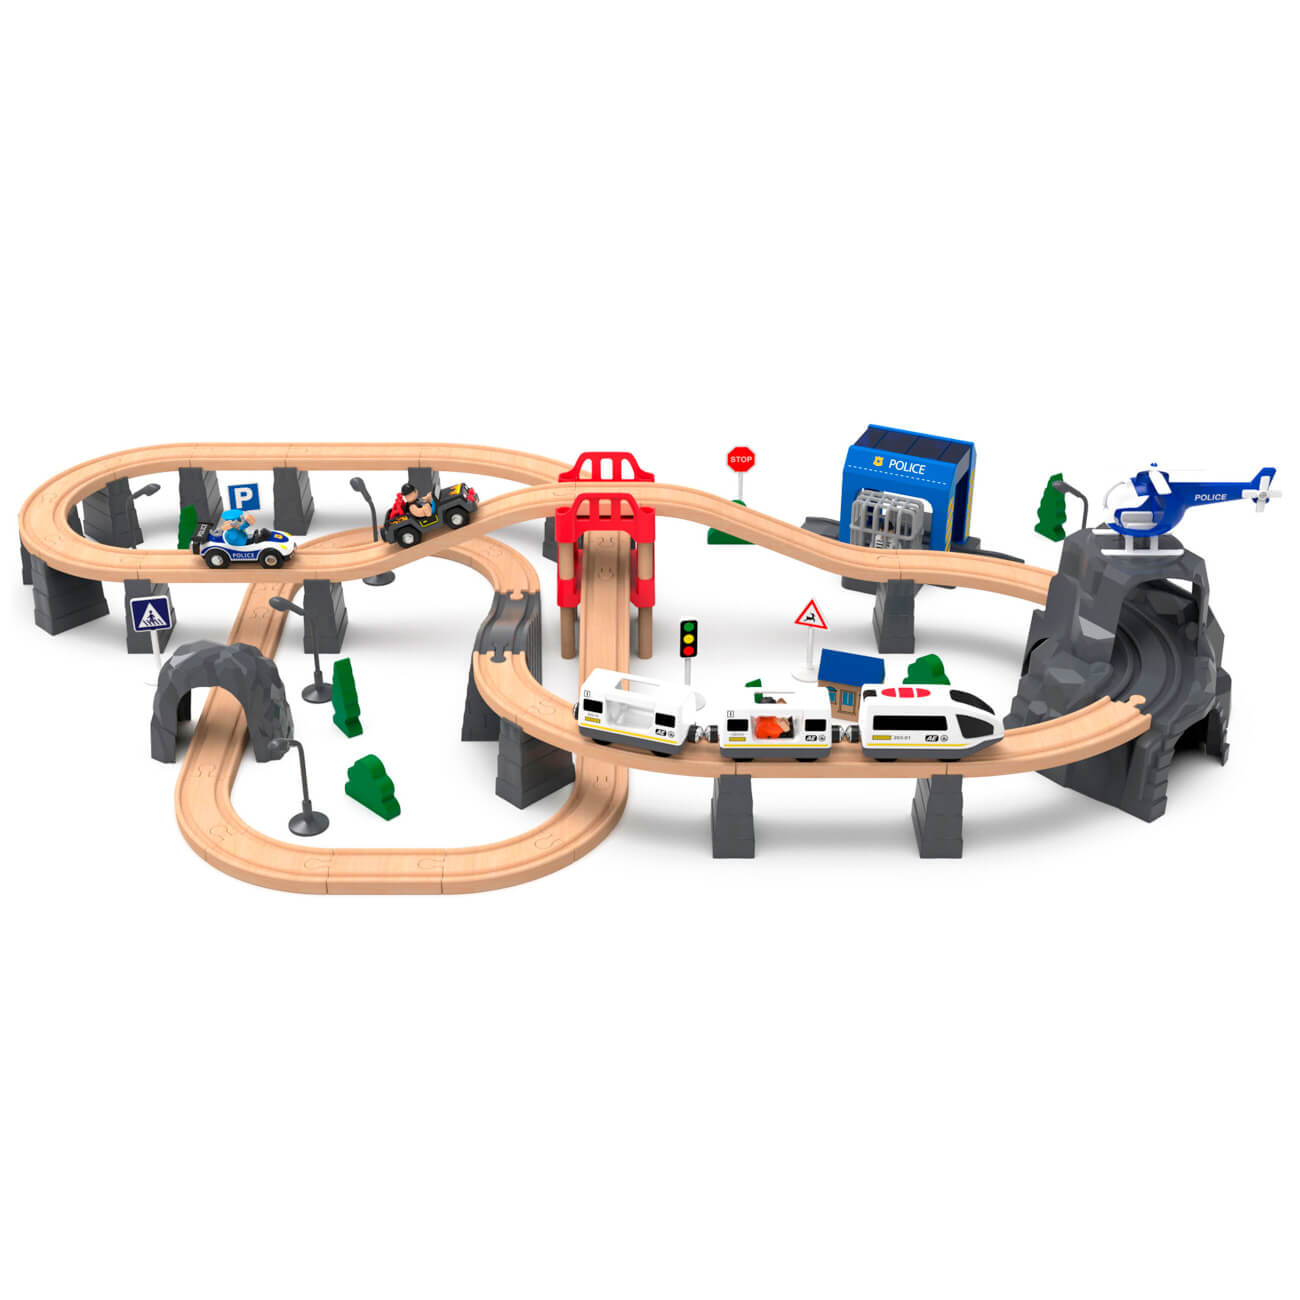 Железная дорога игрушечная, 98 см, дерево/пластик, Электропоезд, Game rail набор украшений пластик 10 шт